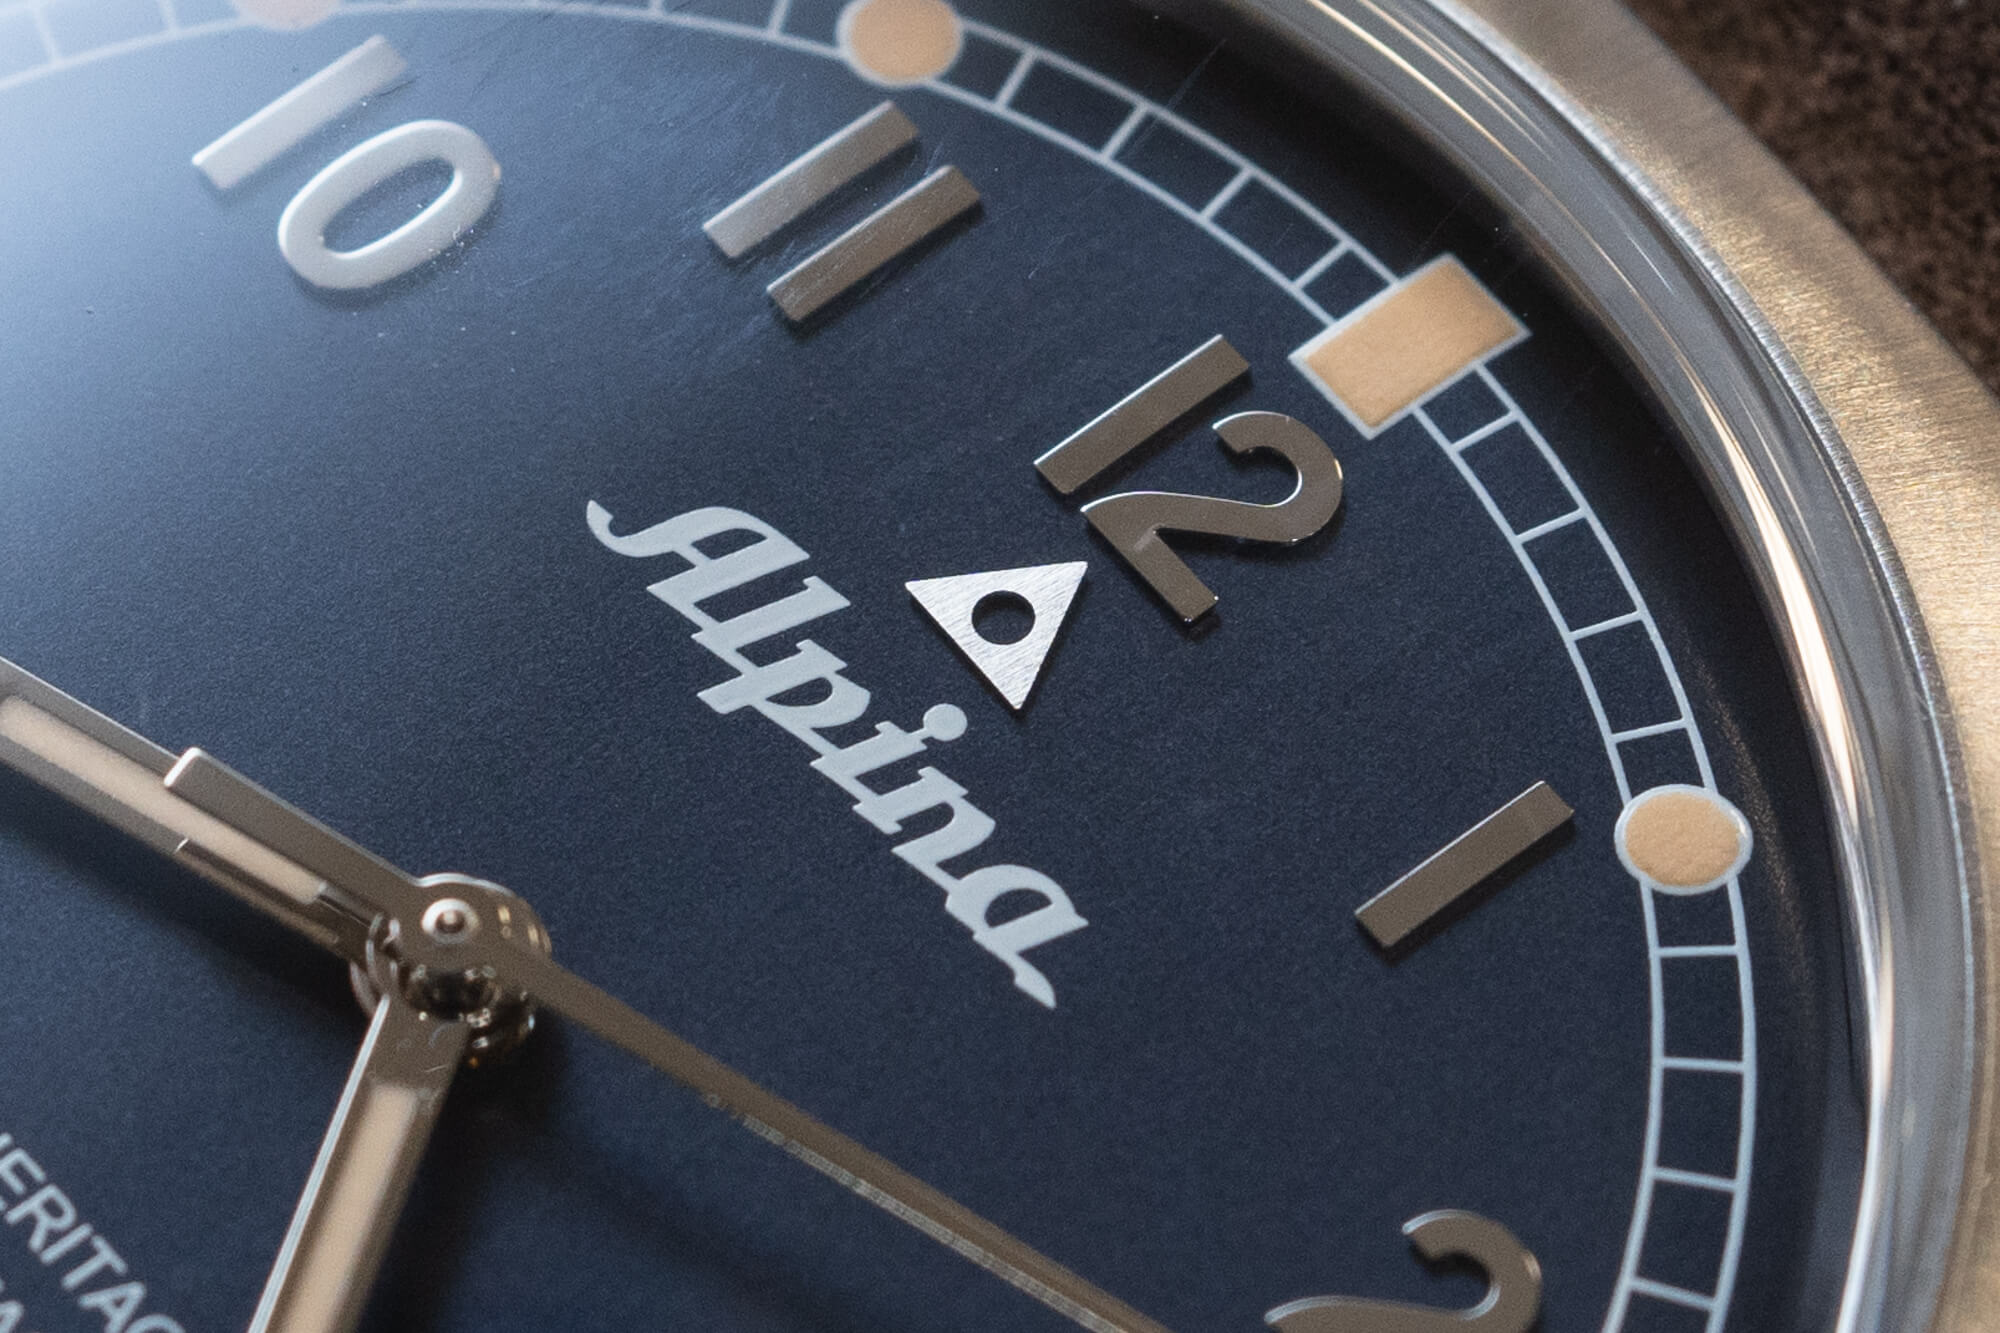 Мануфактурные часы Alpina Startimer Pilot Heritage с бамперным механизмом